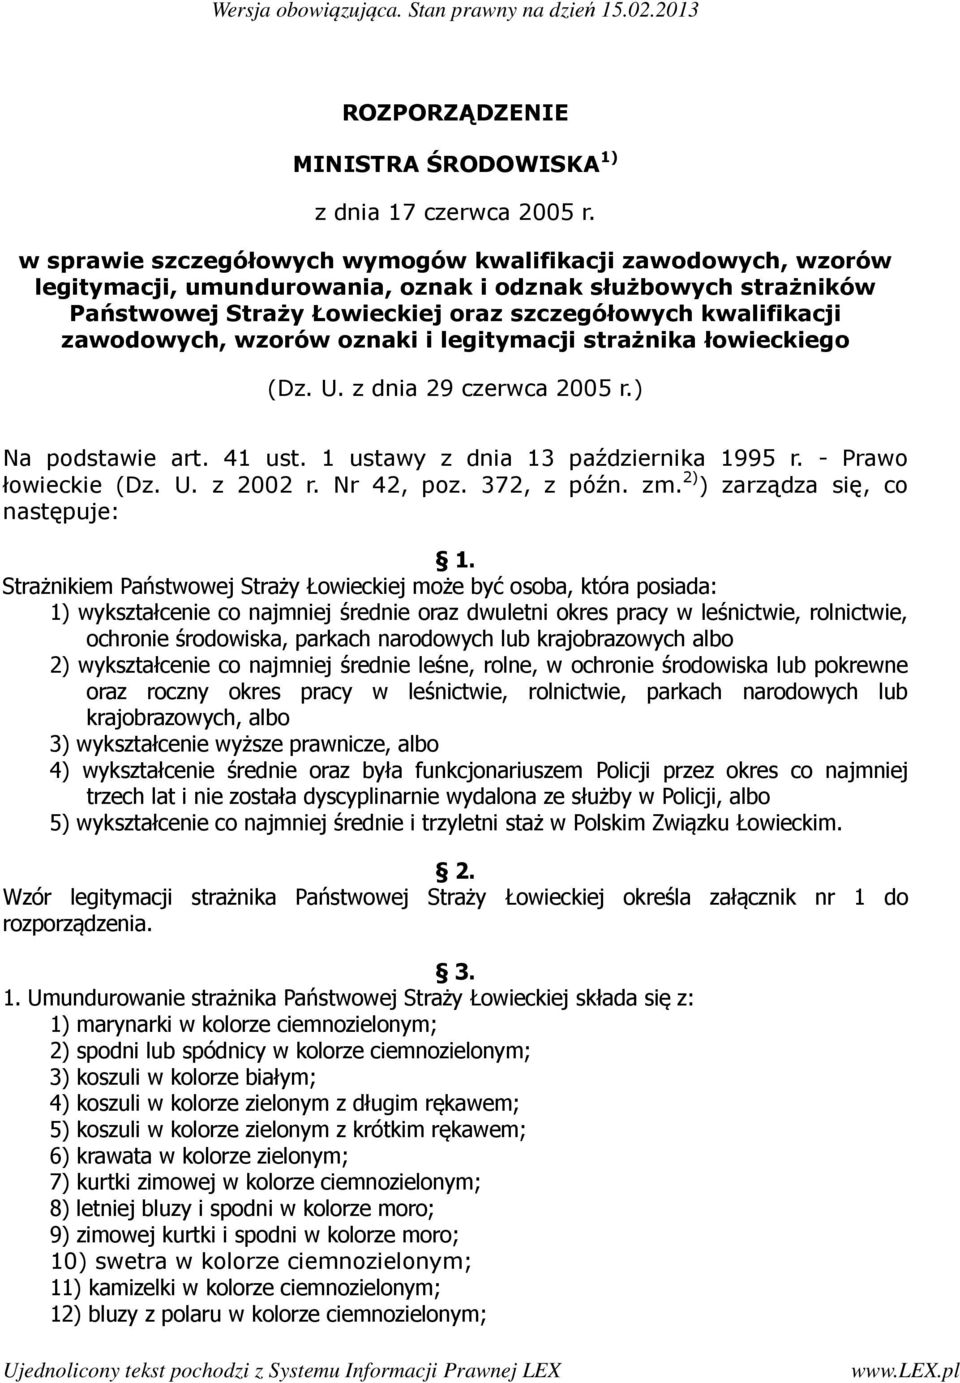 zawodowych, wzorów oznaki i legitymacji strażnika łowieckiego (Dz. U. z dnia 29 czerwca 2005 r.) Na podstawie art. 41 ust. 1 ustawy z dnia 13 października 1995 r. - Prawo łowieckie (Dz. U. z 2002 r.